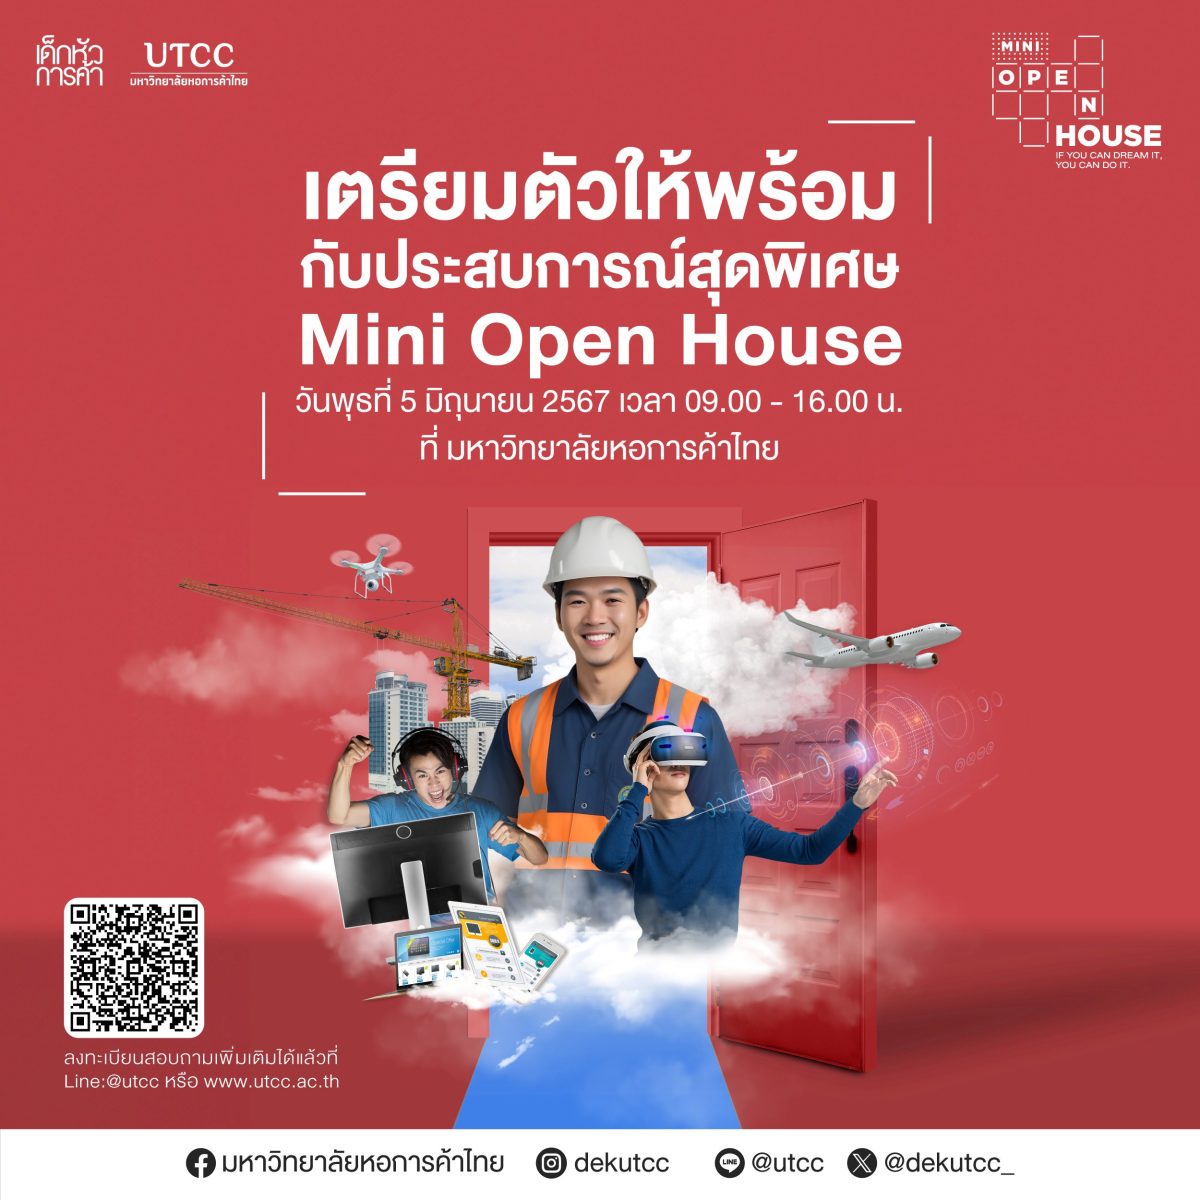 ม.หอการค้าไทย จัดงาน UTCC Mini Open house